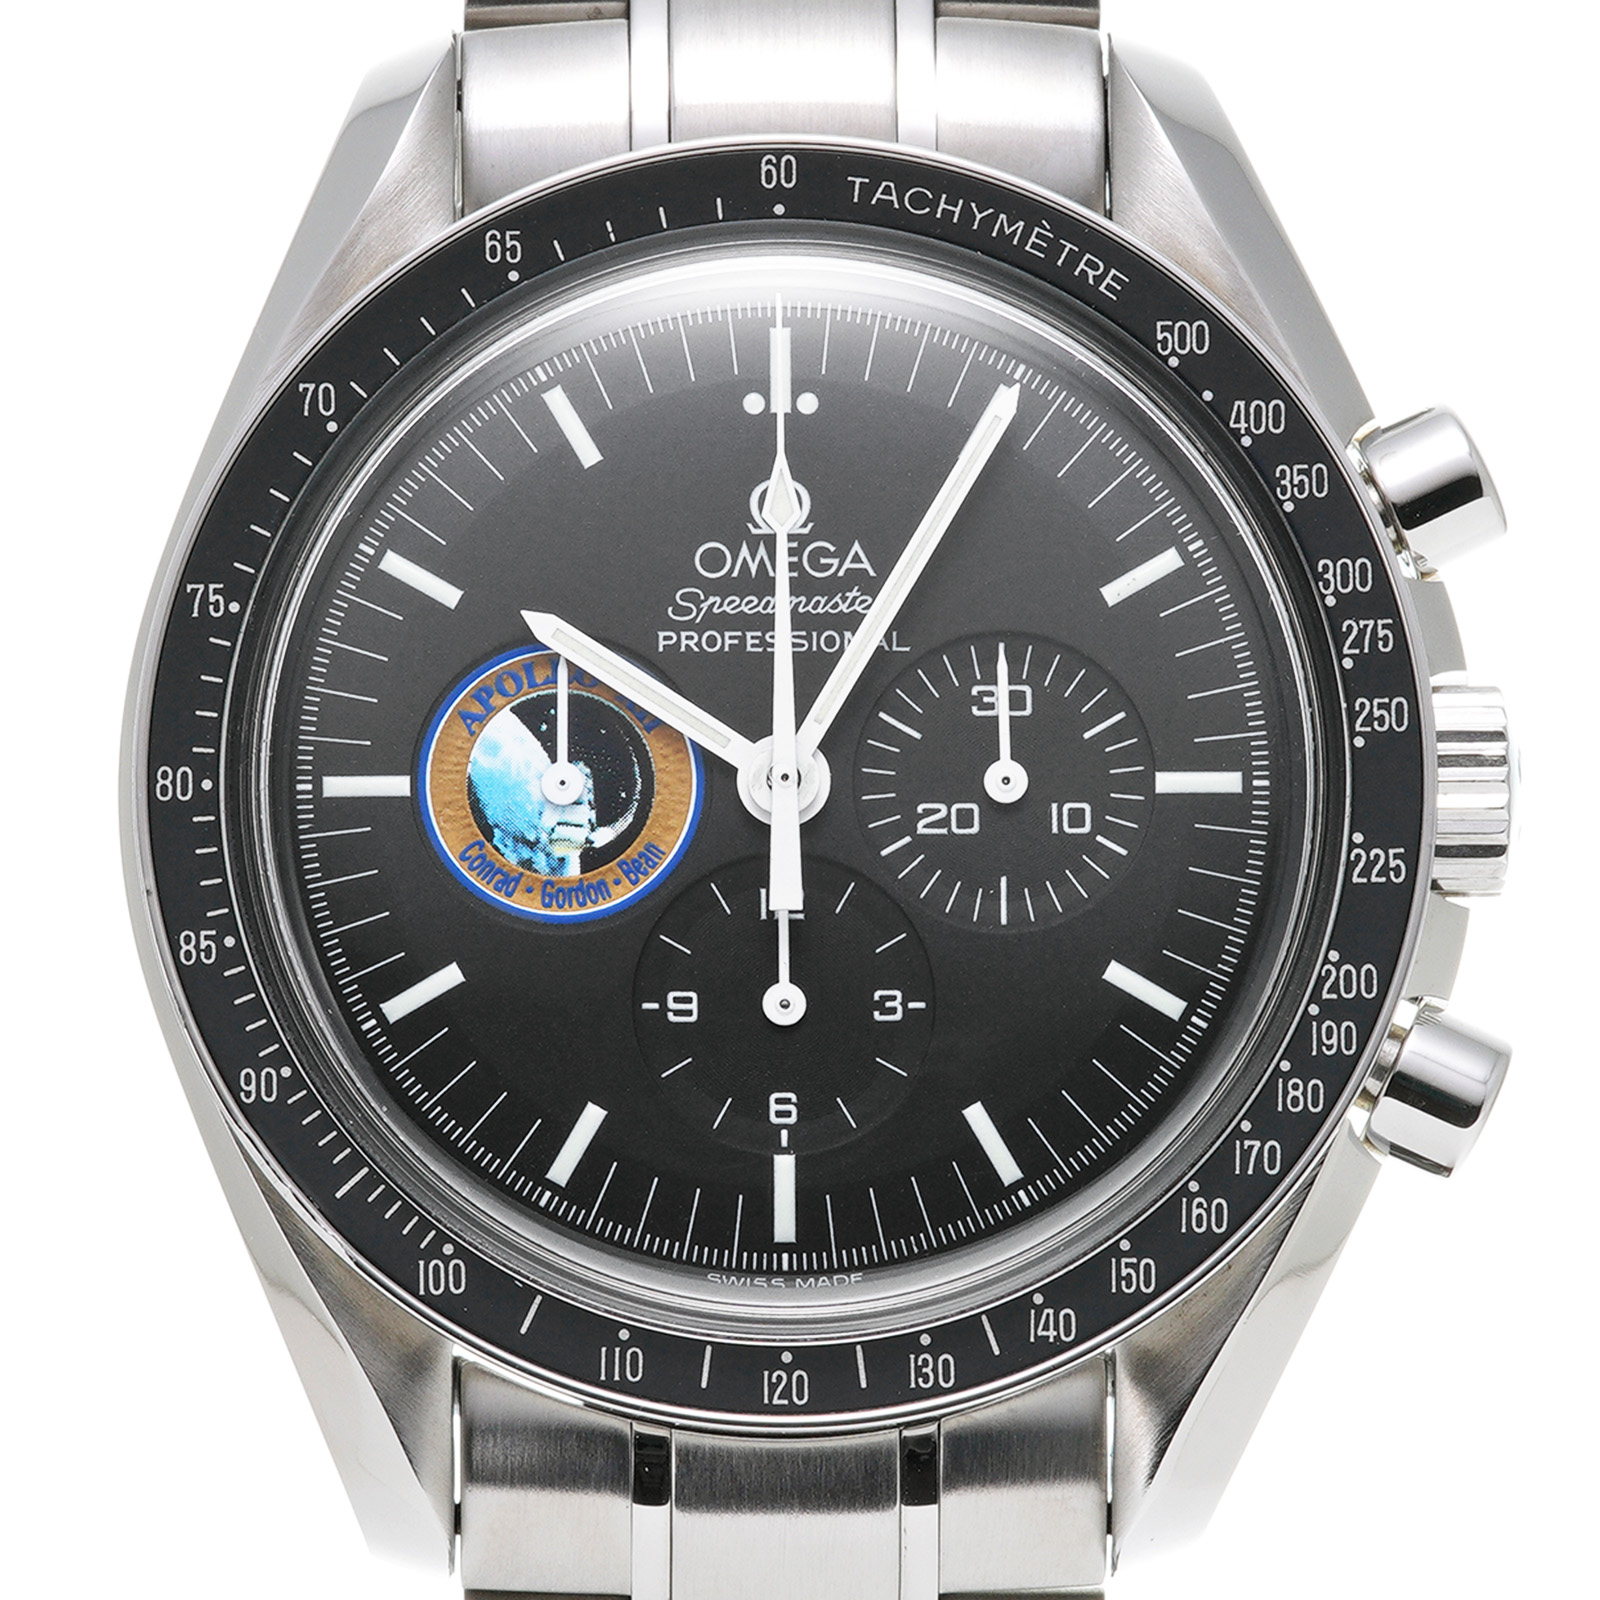 オメガ スピードマスター アポロ16号 腕時計 ウォッチ 腕時計